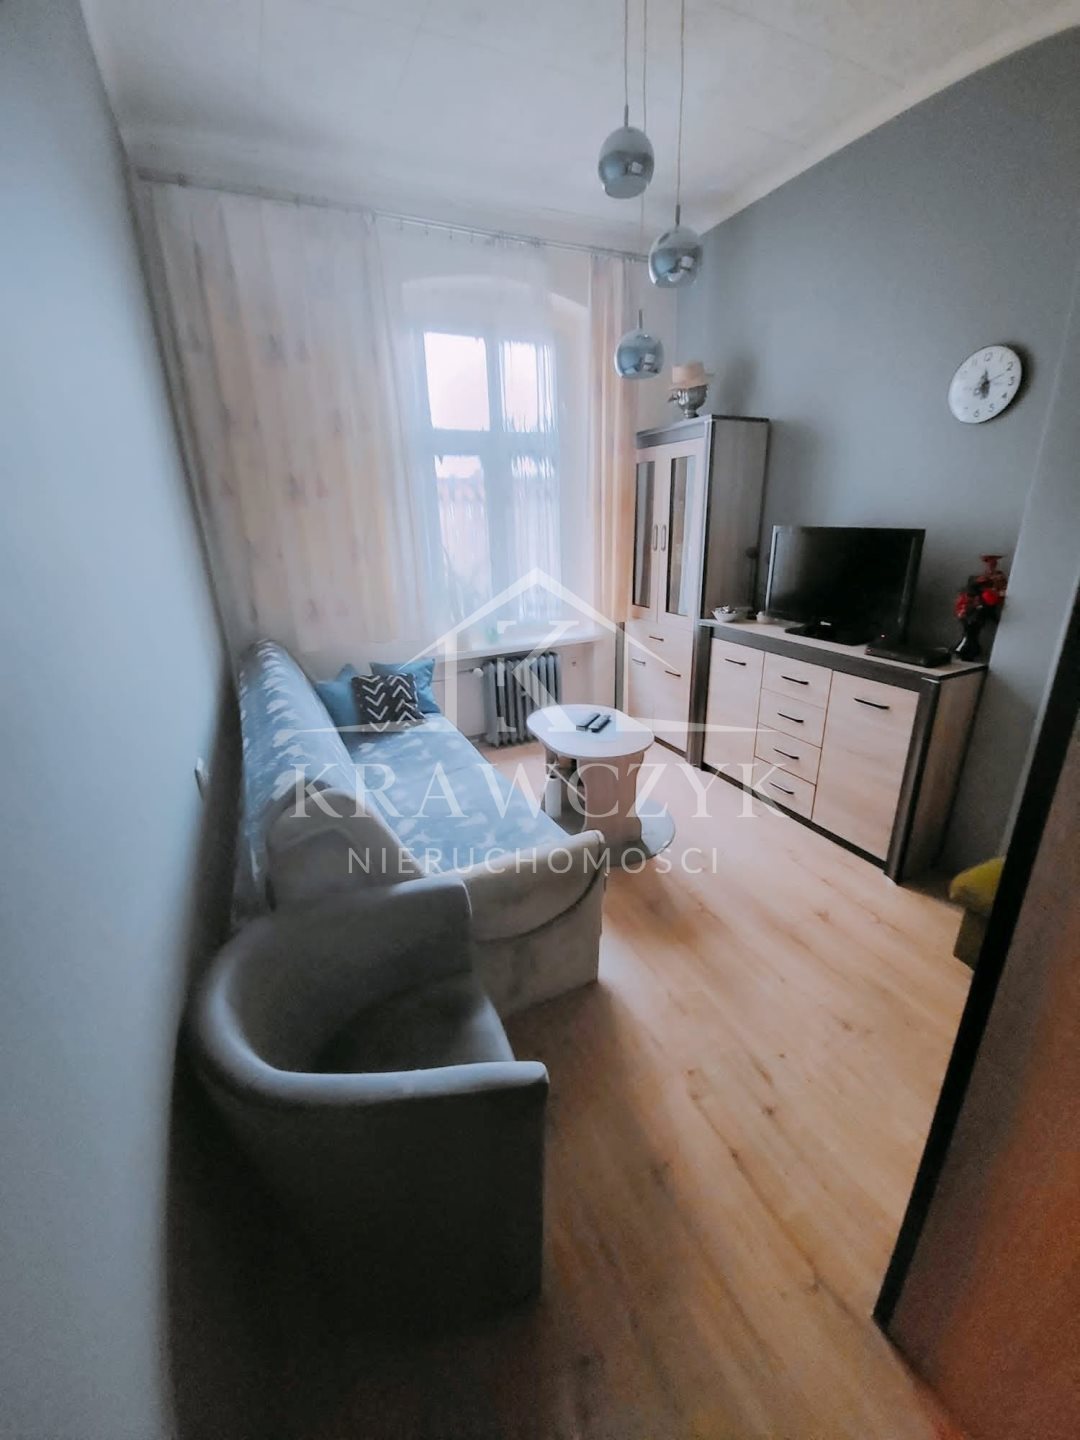 Mieszkanie, 2 pok., 48 m2, Szczecin Pogodno (7)